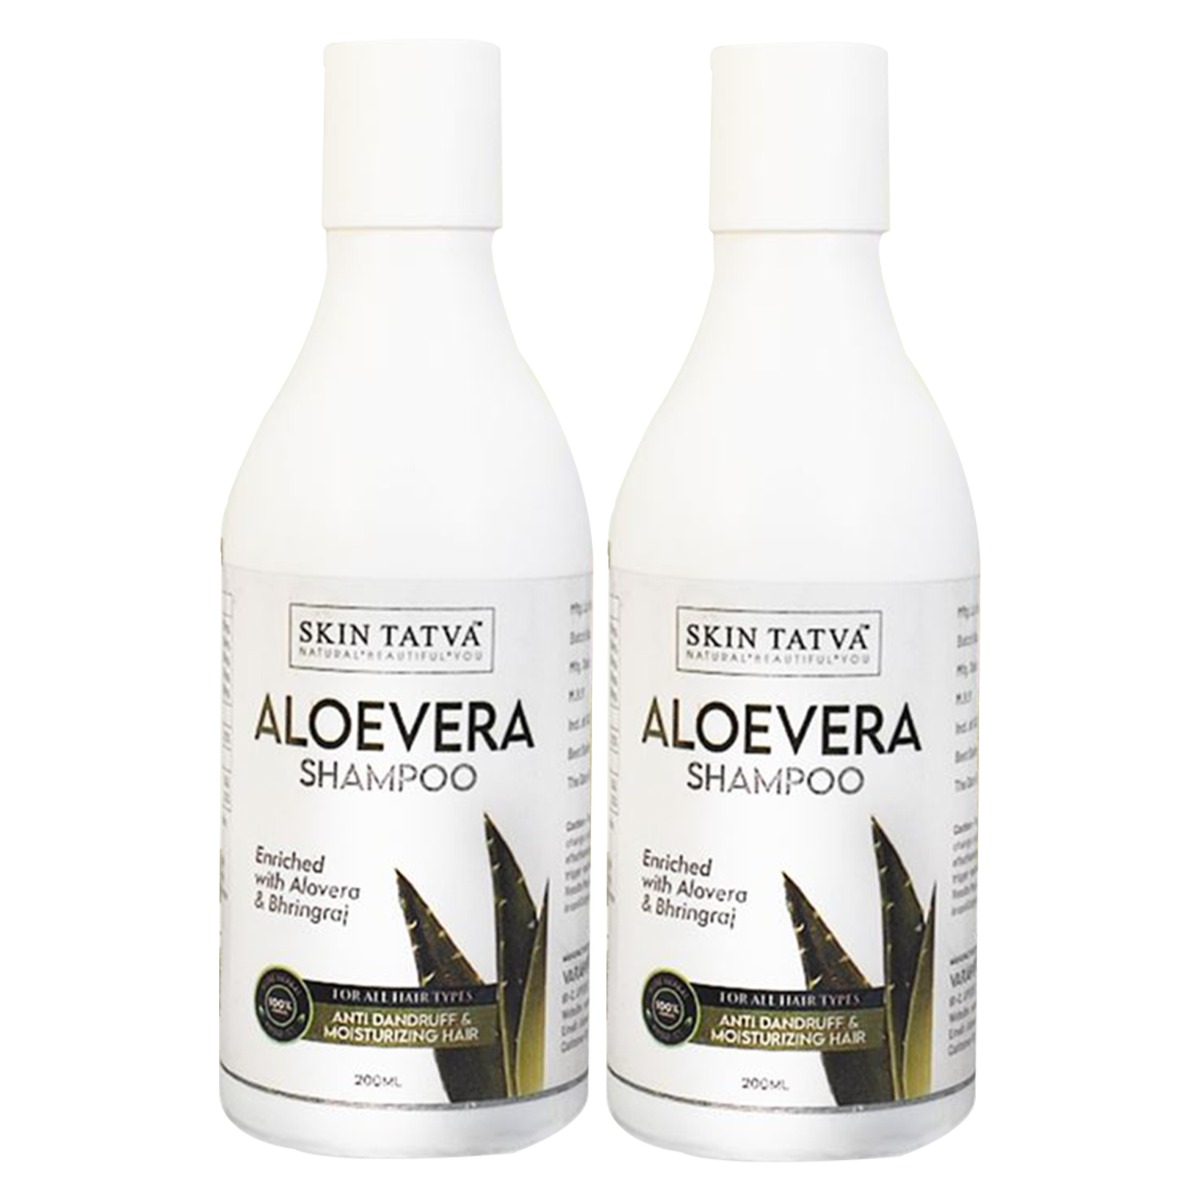 Skin Tatva Aloevera Shampoo - Pack Of 2, 200ml each